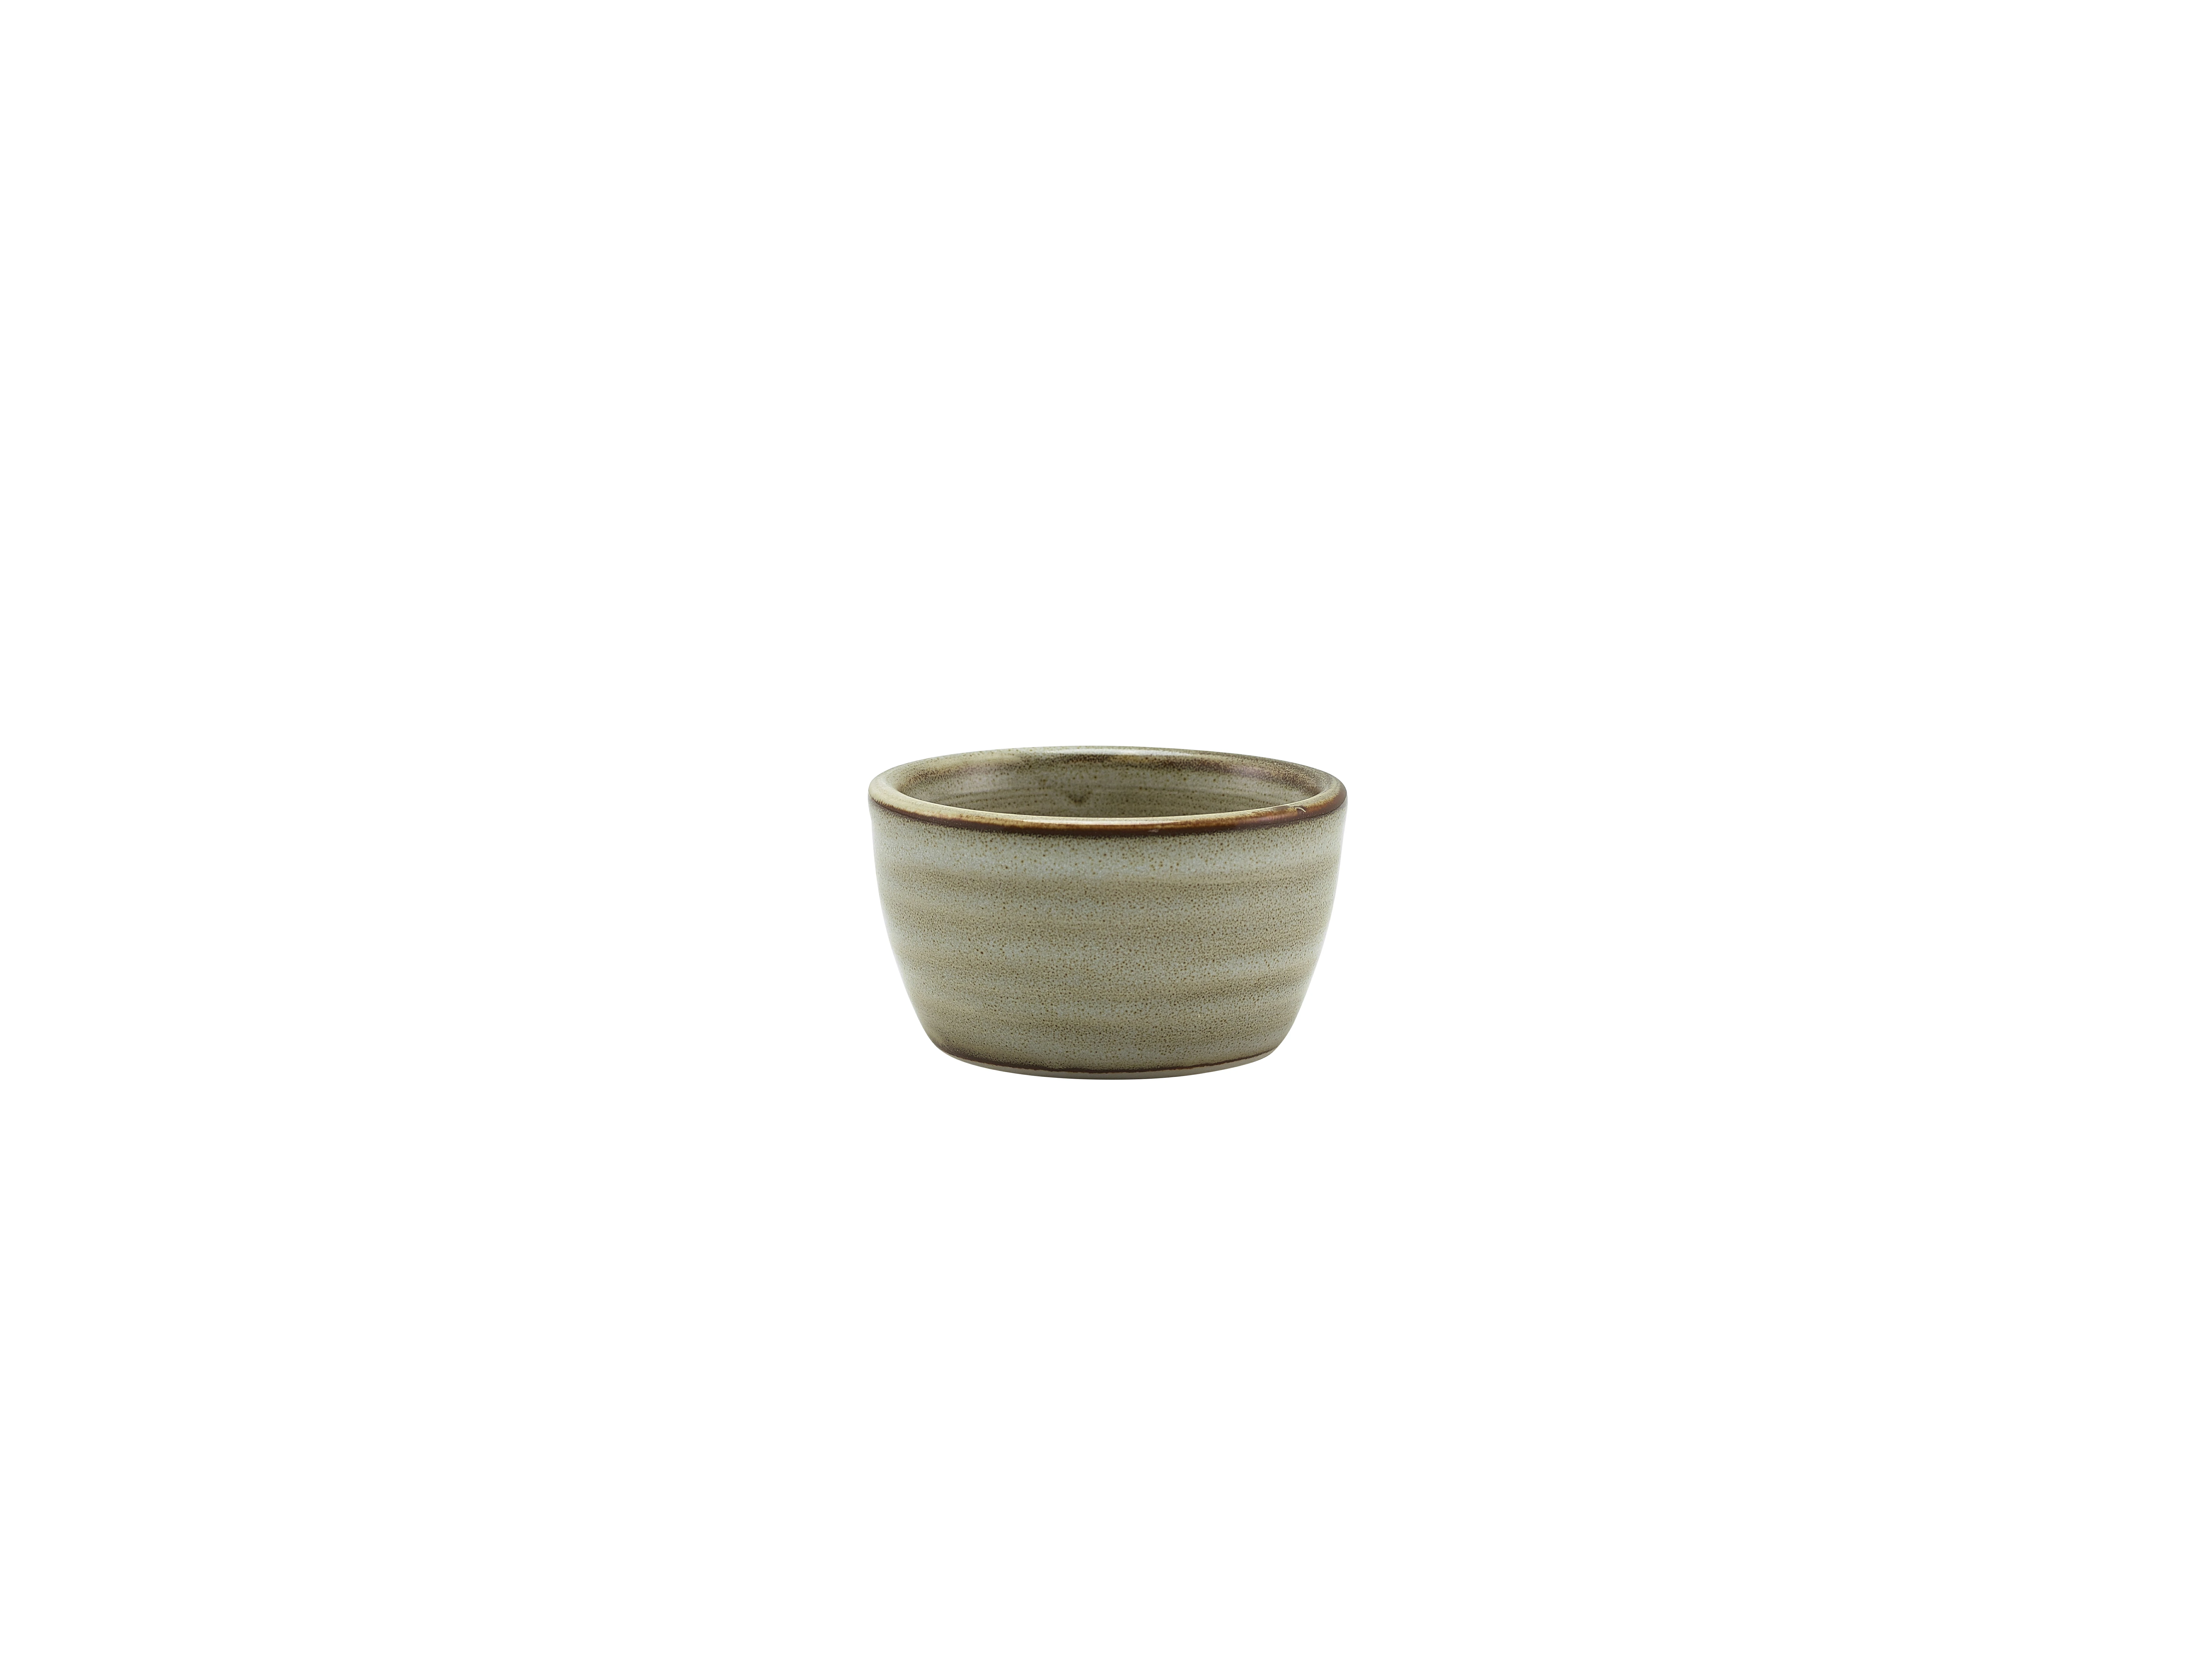 Terra Porcelain Grey Ramekin 45ml/1.5oz